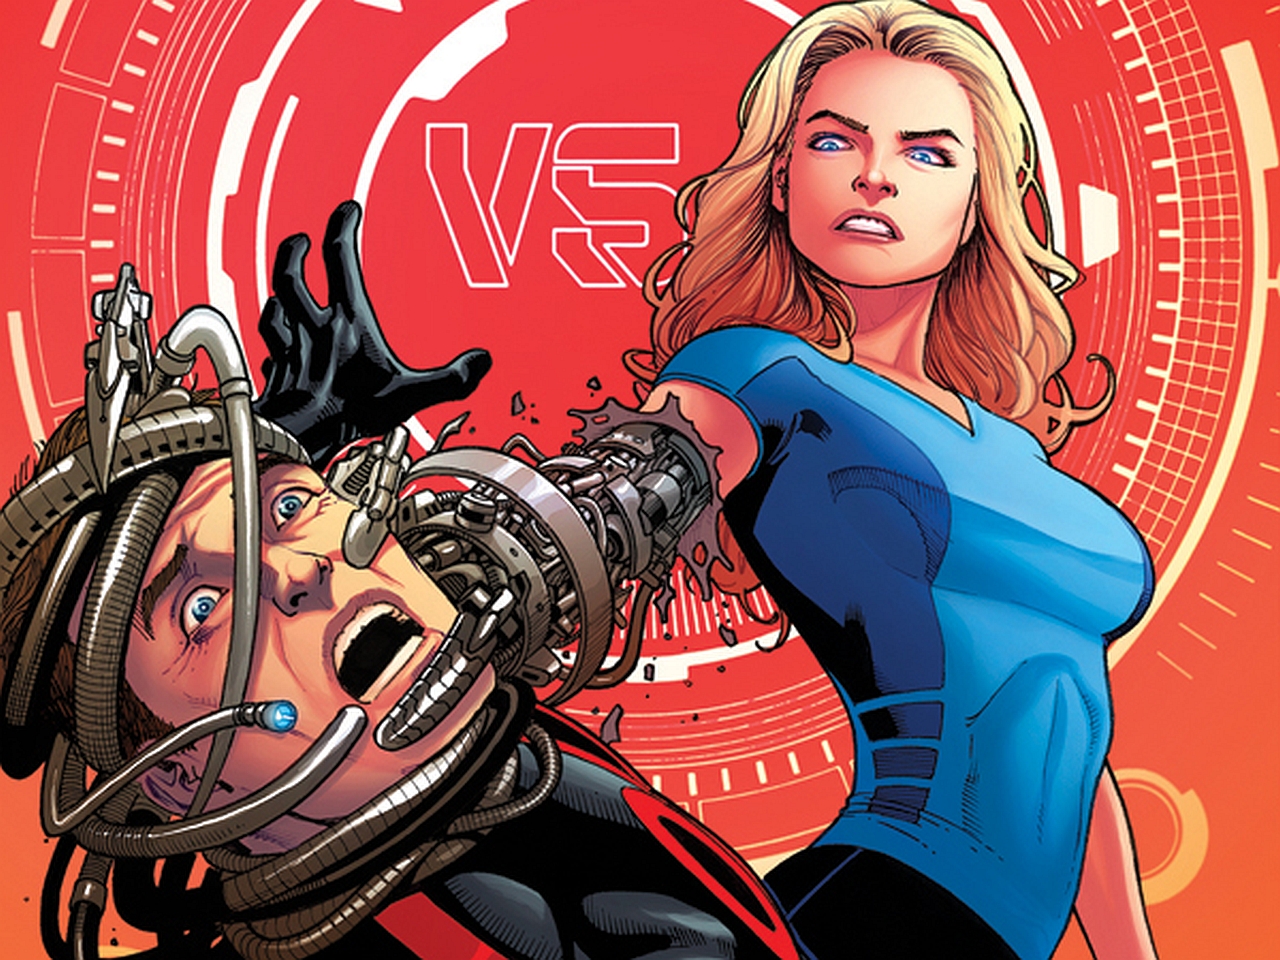 comics, the bionic man vs the bionic woman, bionic man, bionic woman